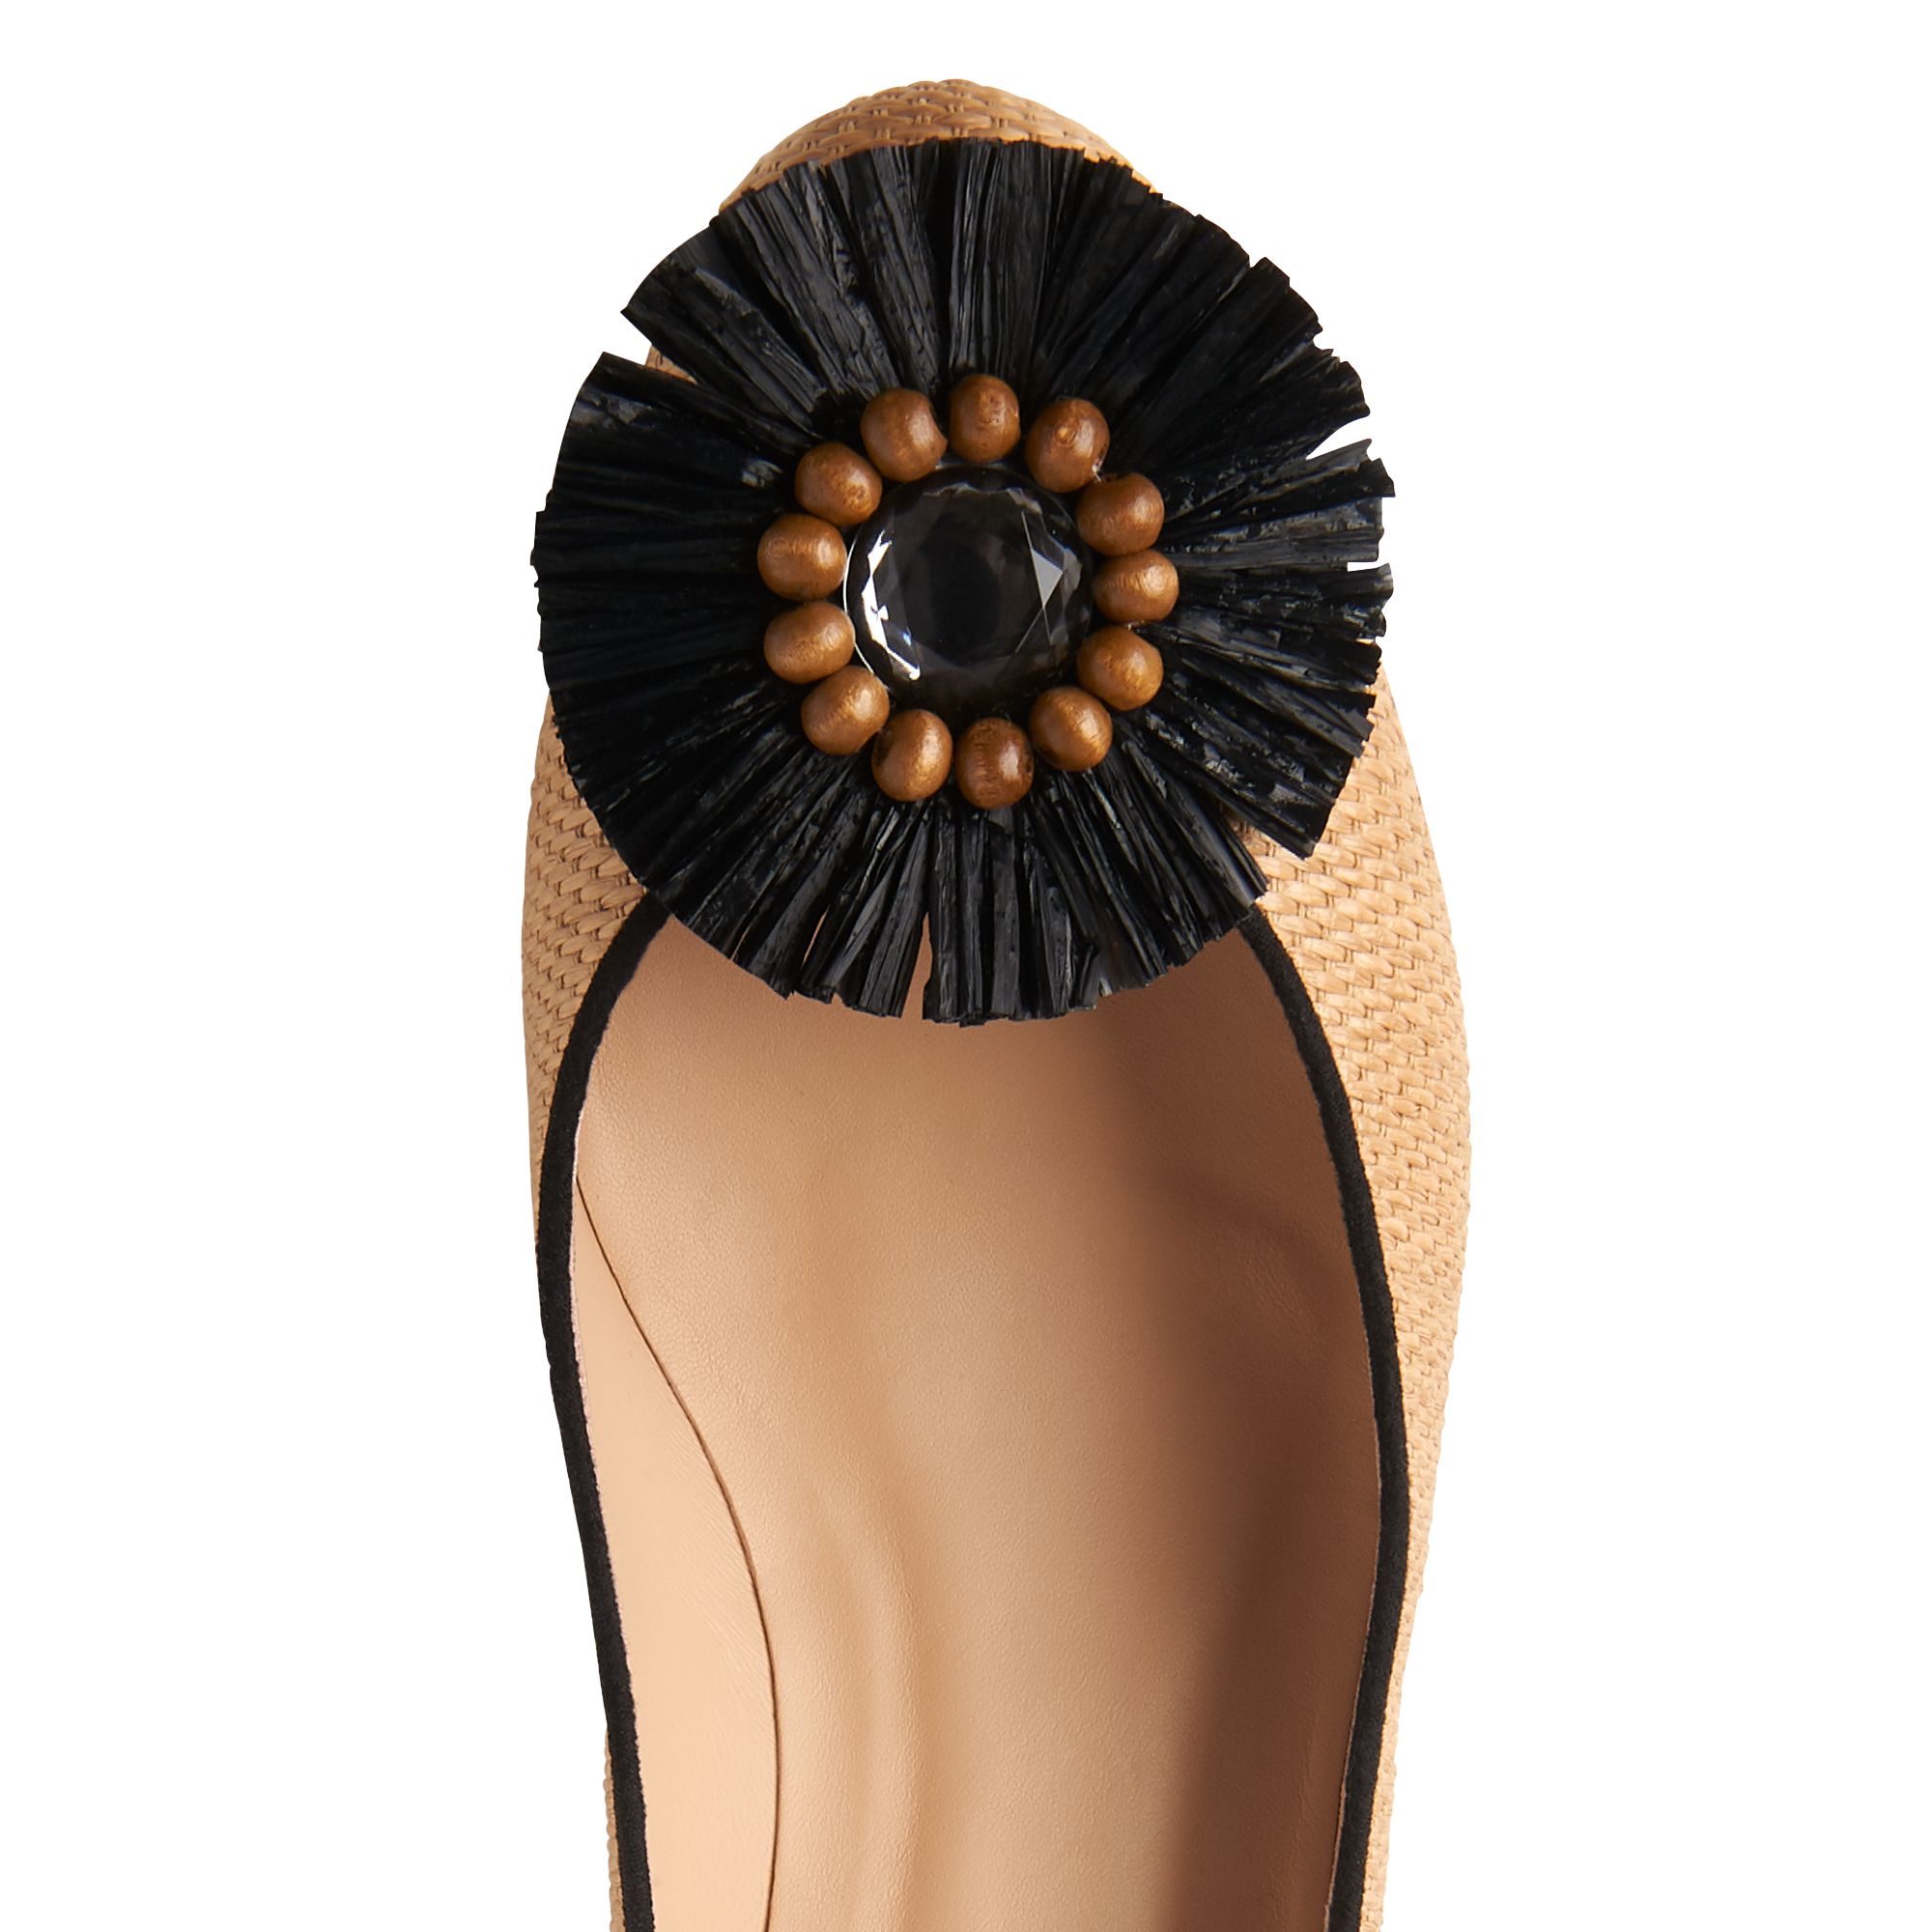 abella shoes website